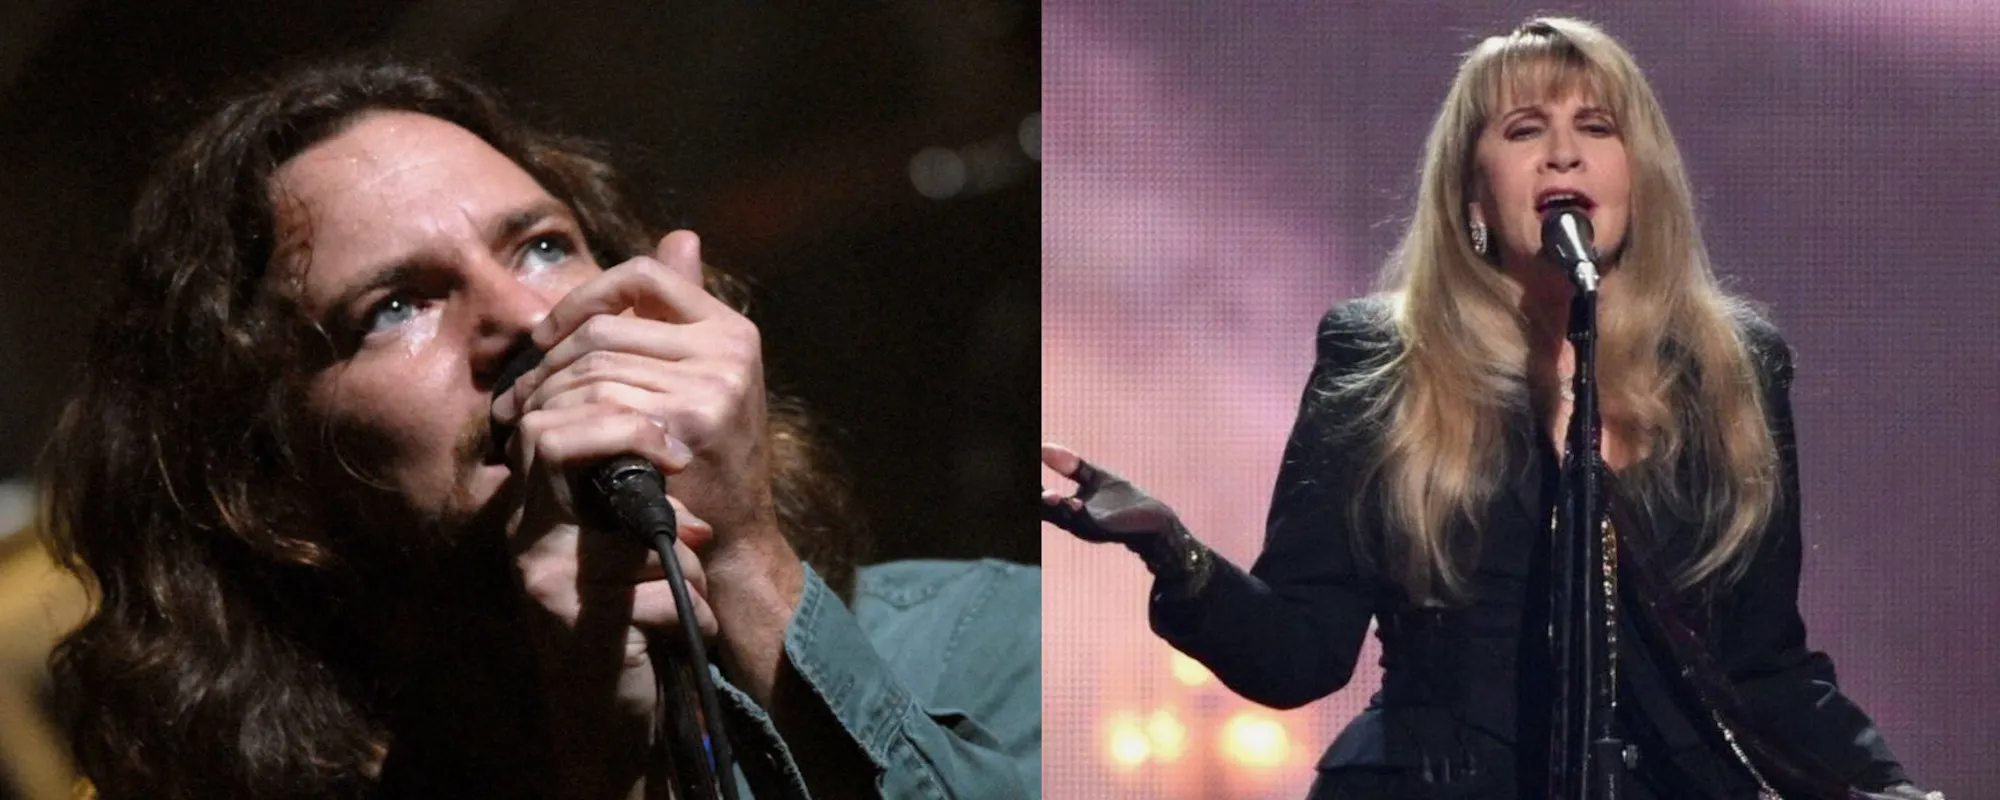 Stevie Nicks, Eddie Vedder Duet on “Stop Dragging My Heart Around” at Ohana Fest